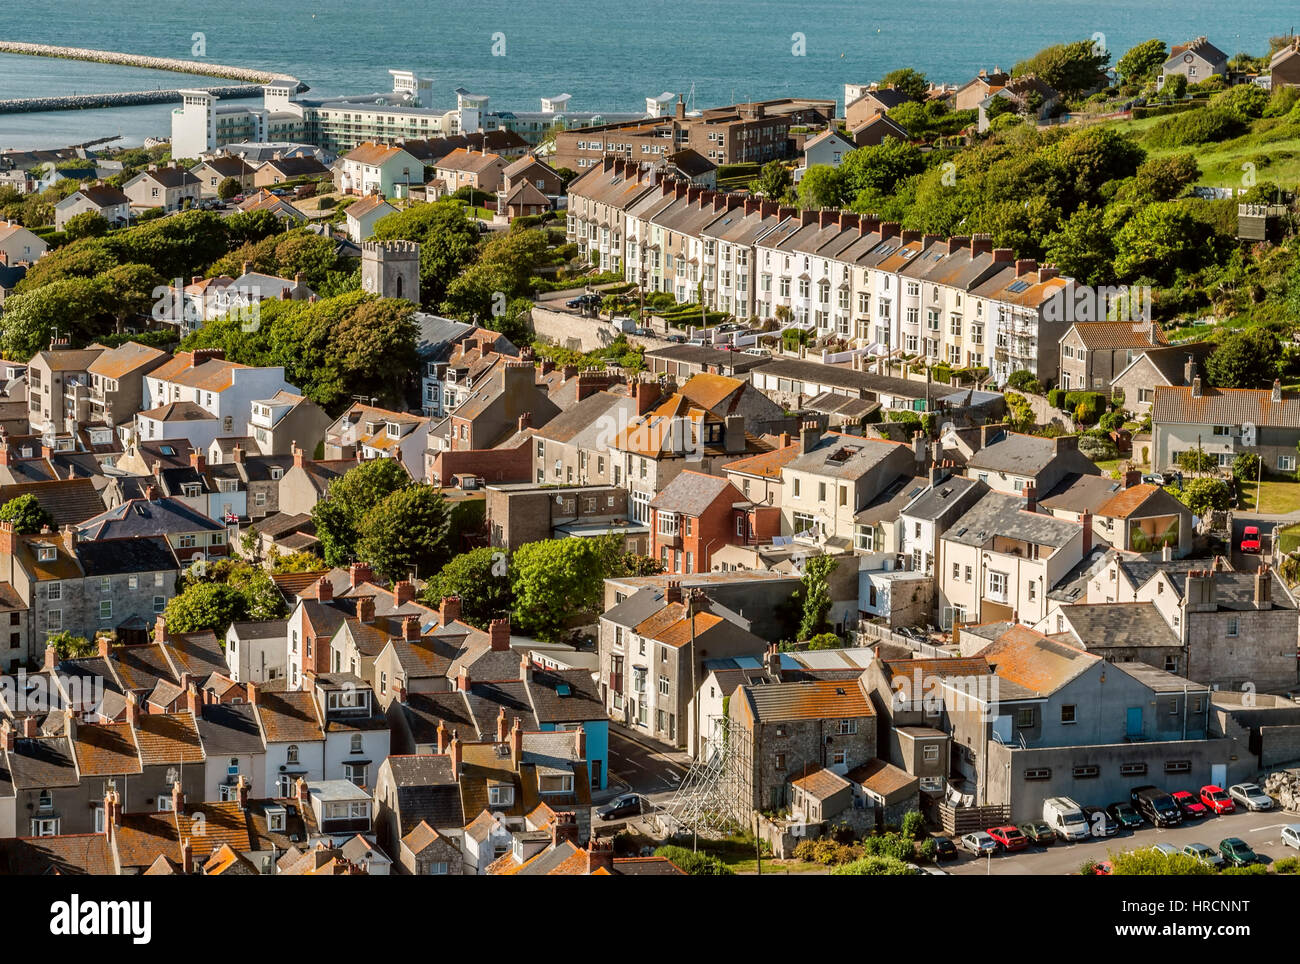 Stadt Wren auf Isle of Portland an der englischen Kanalküste in der Grafschaft Dorset, England. Stockfoto